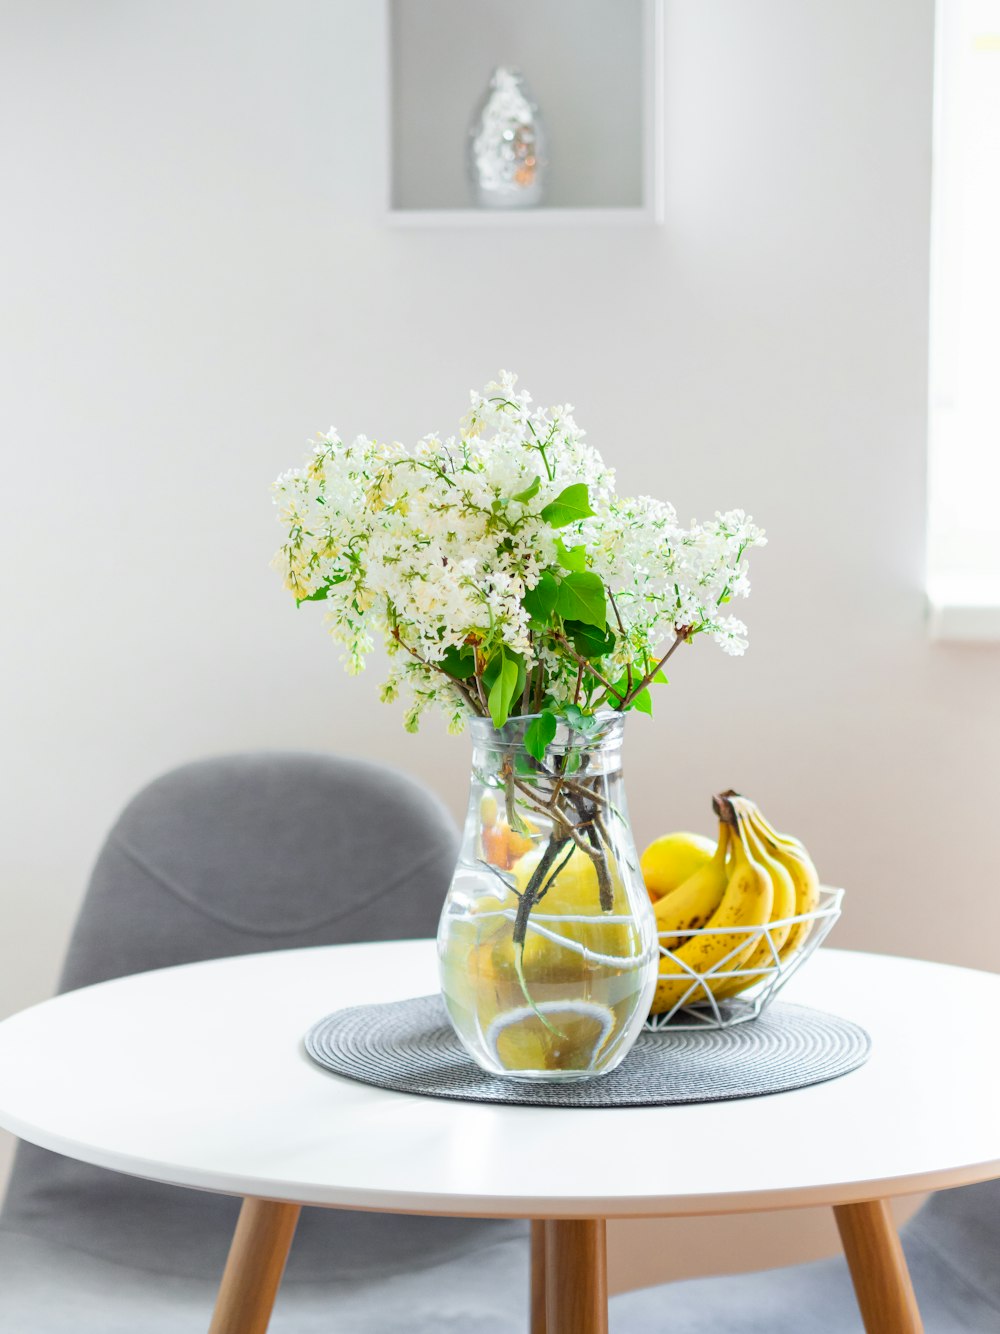 bouquet de fleurs blanches et vertes sur plaque en céramique blanche